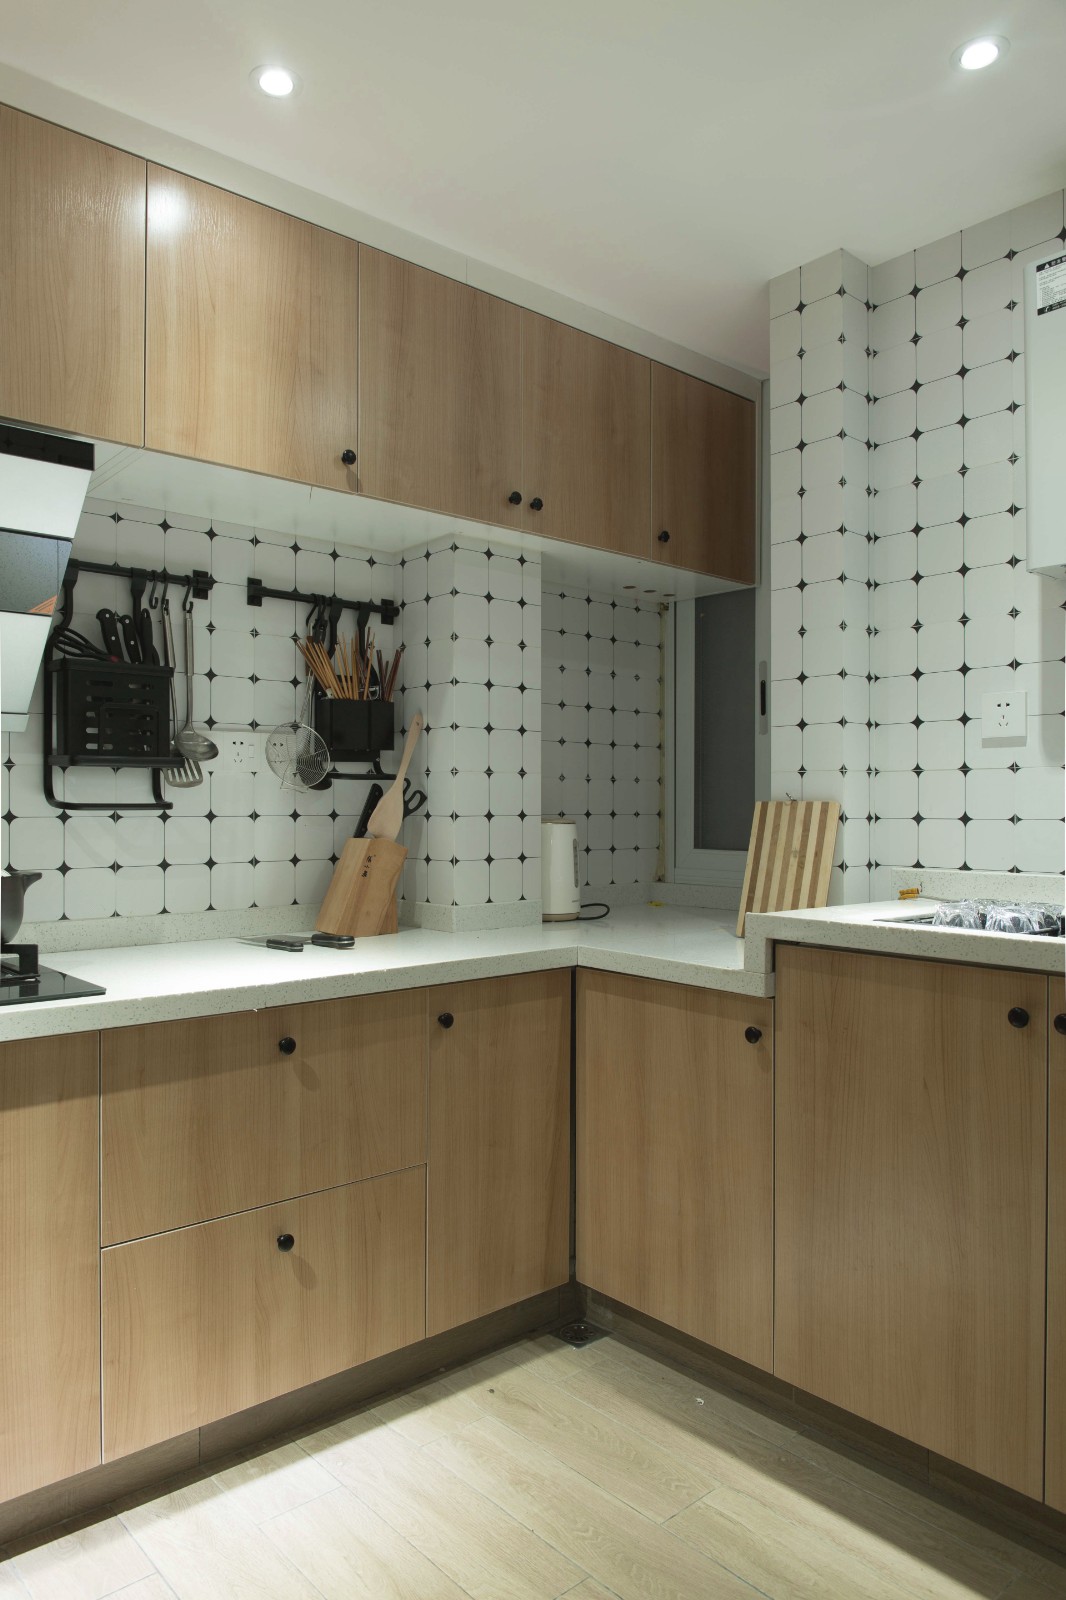 裝修公司北歐風格室內裝修效果圖-廚房